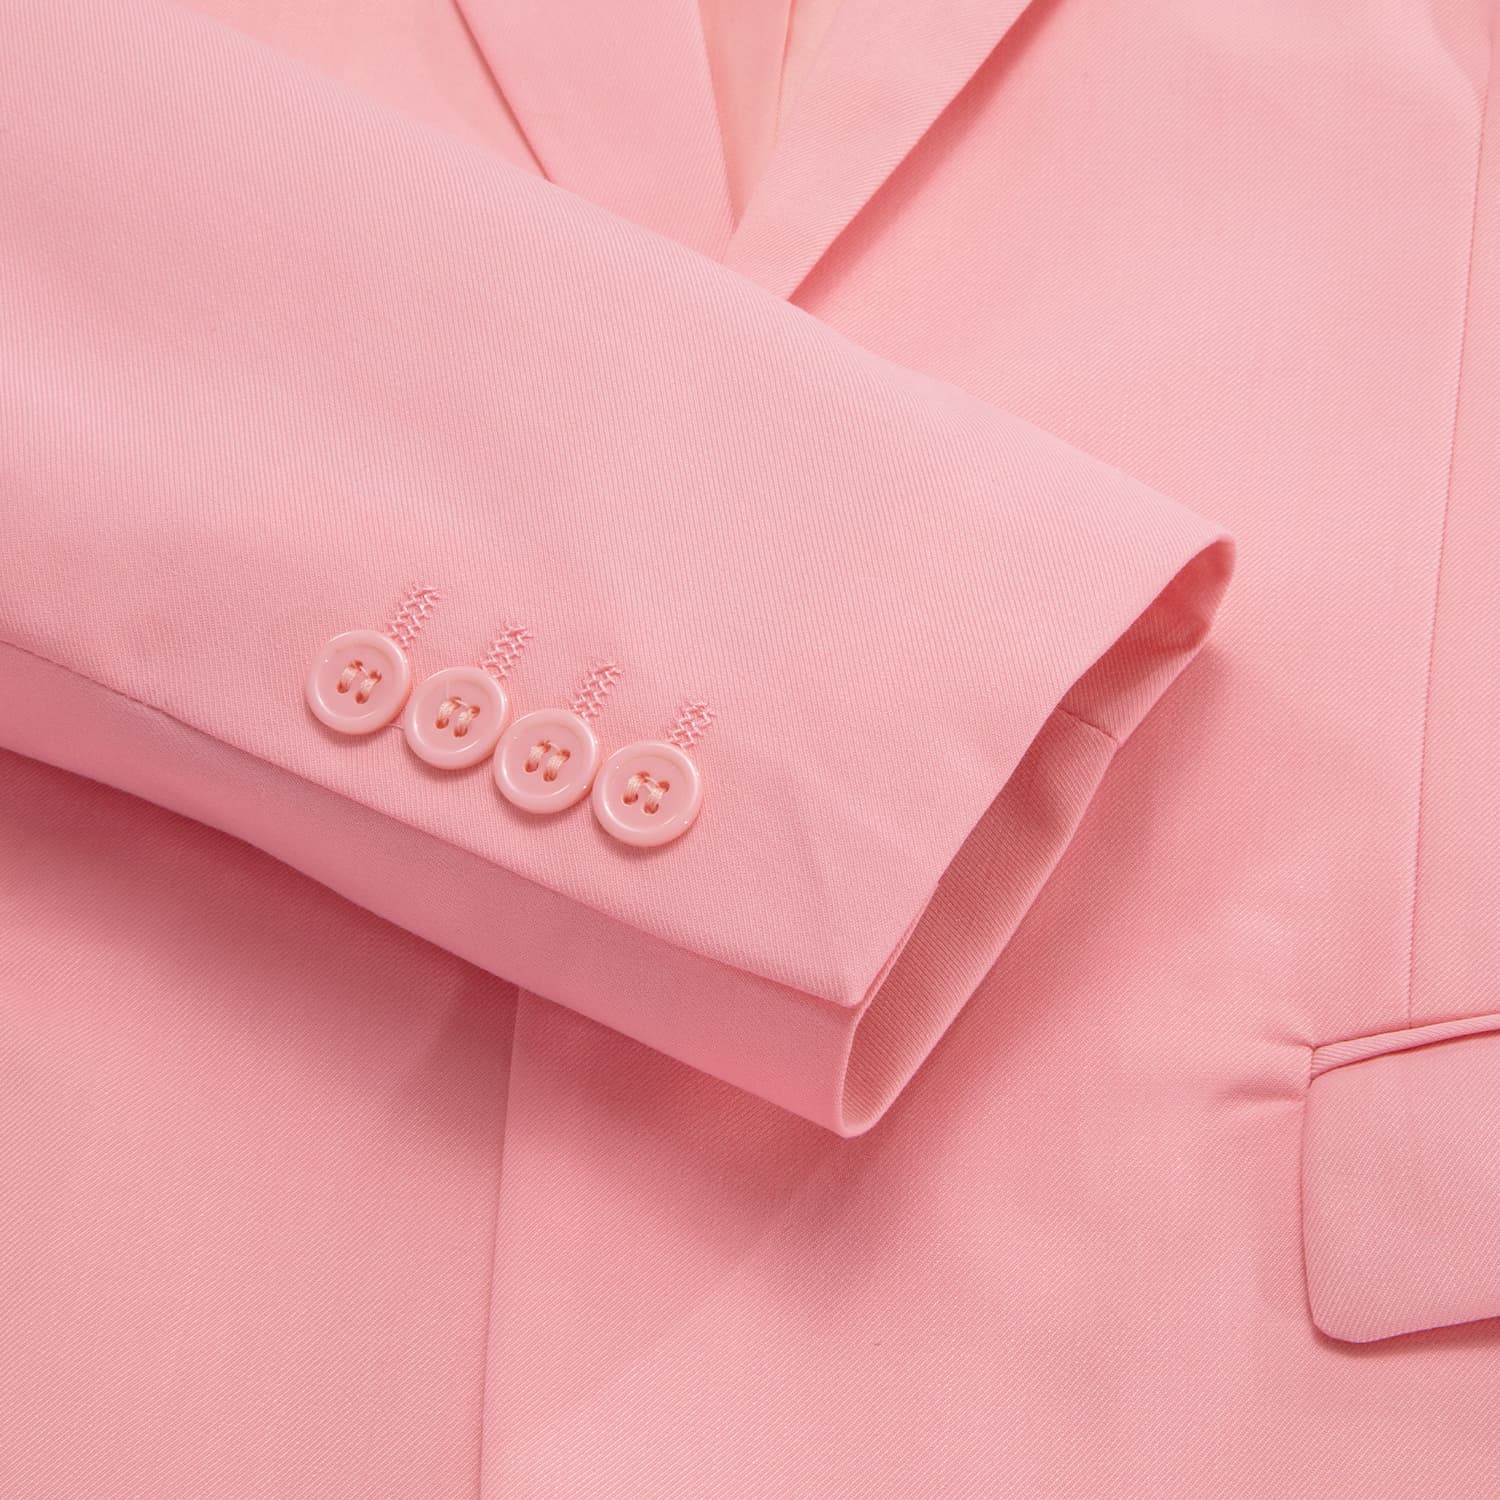 Blazer LightCoral Pink Men's Wedding Business Solid Top Men Suit